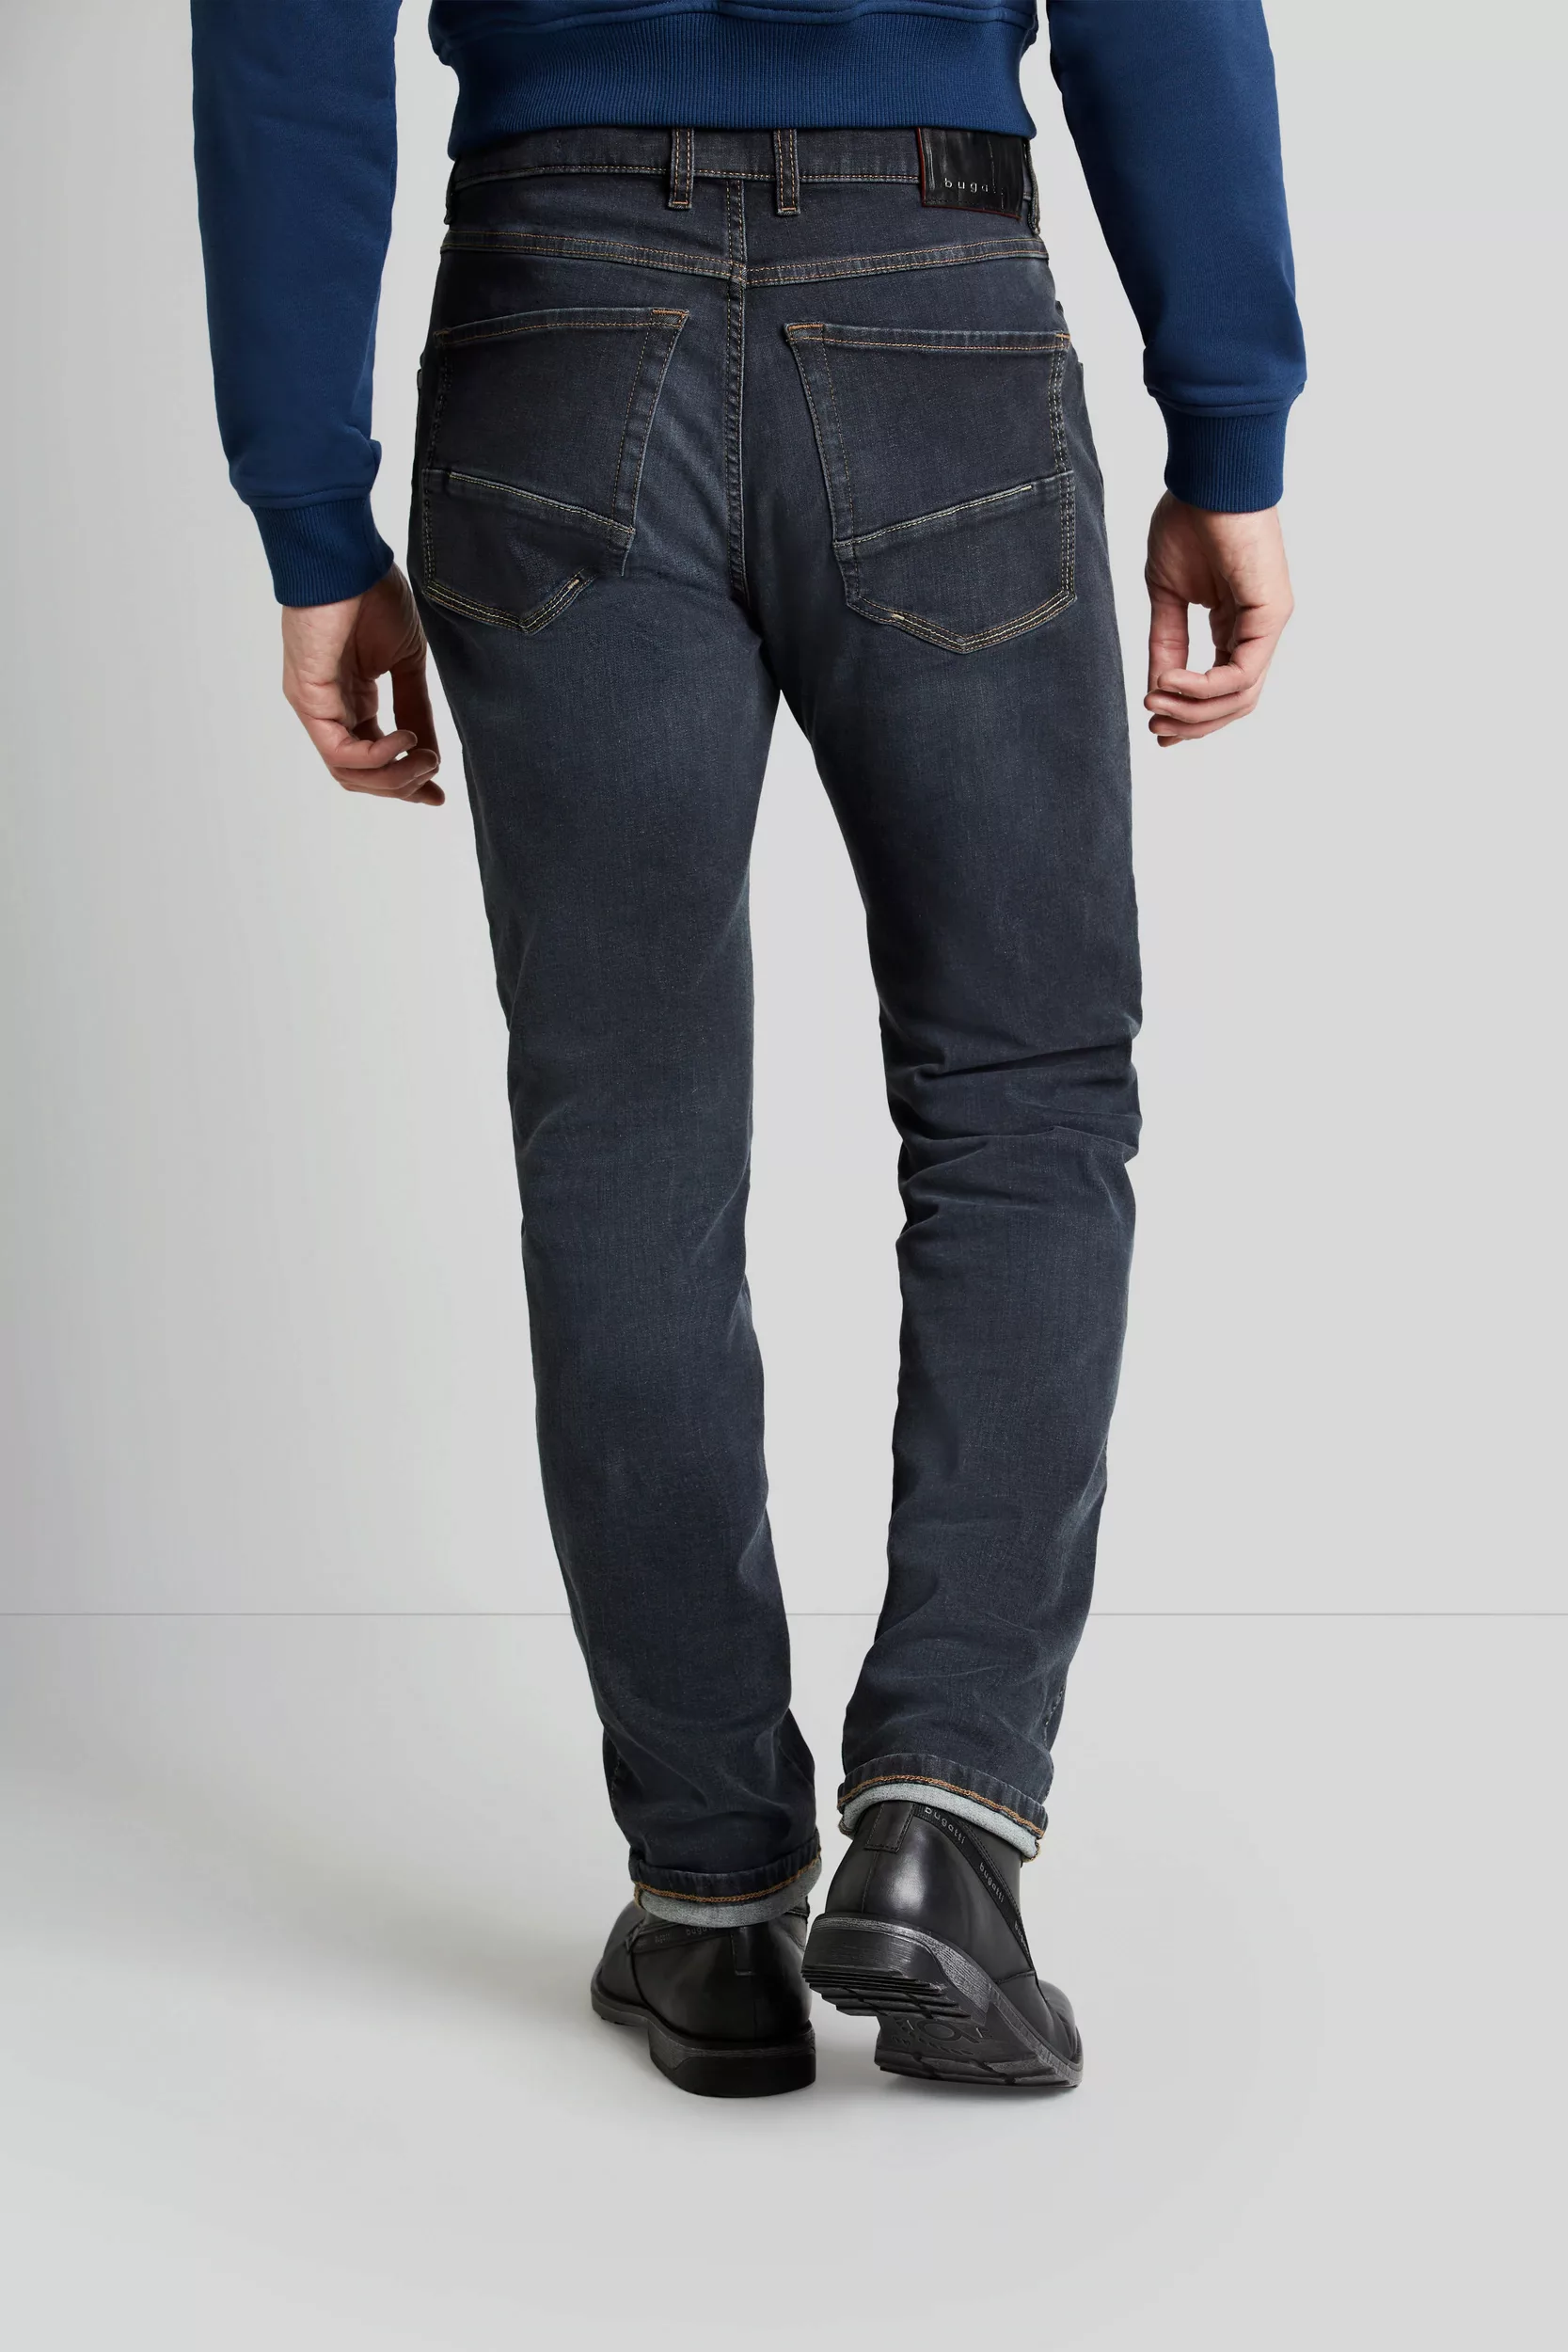 bugatti 5-Pocket-Jeans "Flexcity Denim", mit hohem Tragekomfort günstig online kaufen